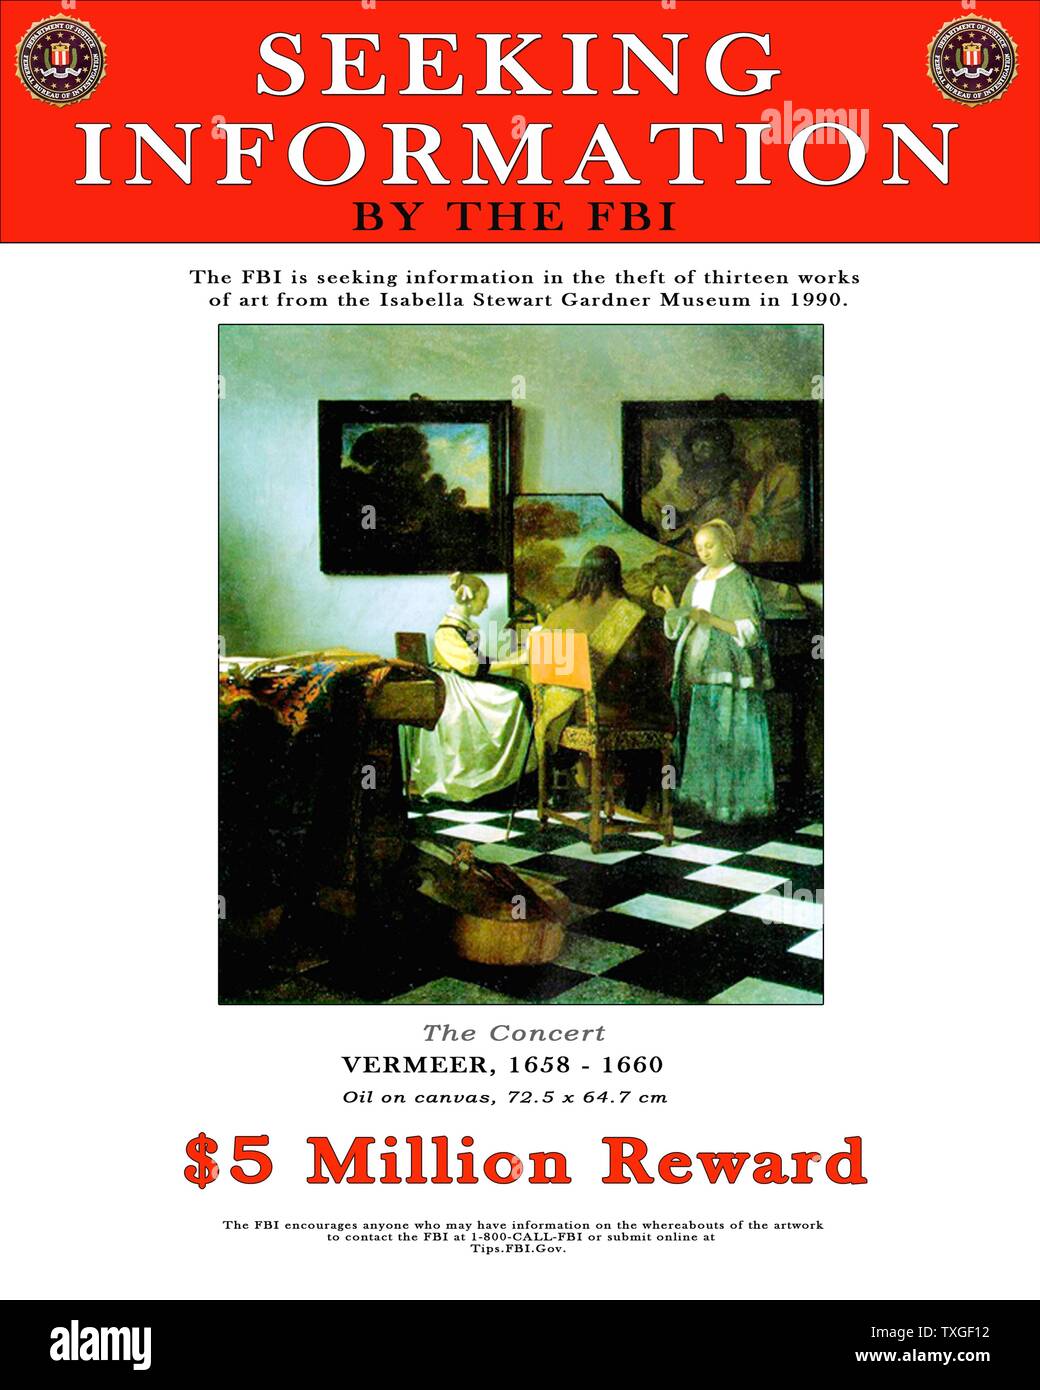 L'affiche du FBI offrant une récompense pour des informations sur le vol d'un art de peintures (y compris le travail par Vermeer), du musée d'art de Gardiner Isabel en 1990. Banque D'Images